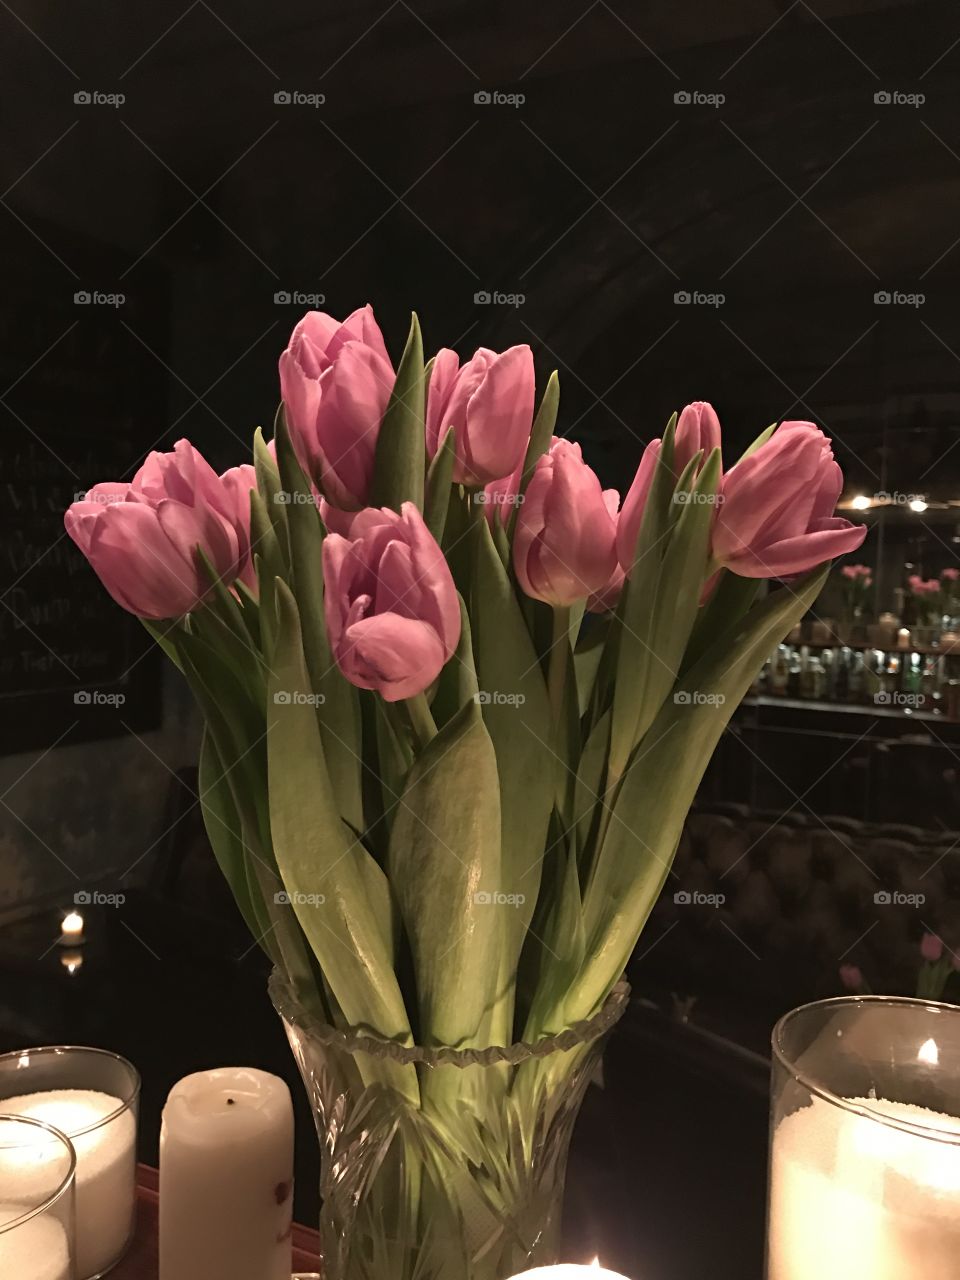 Tulips in romantic light